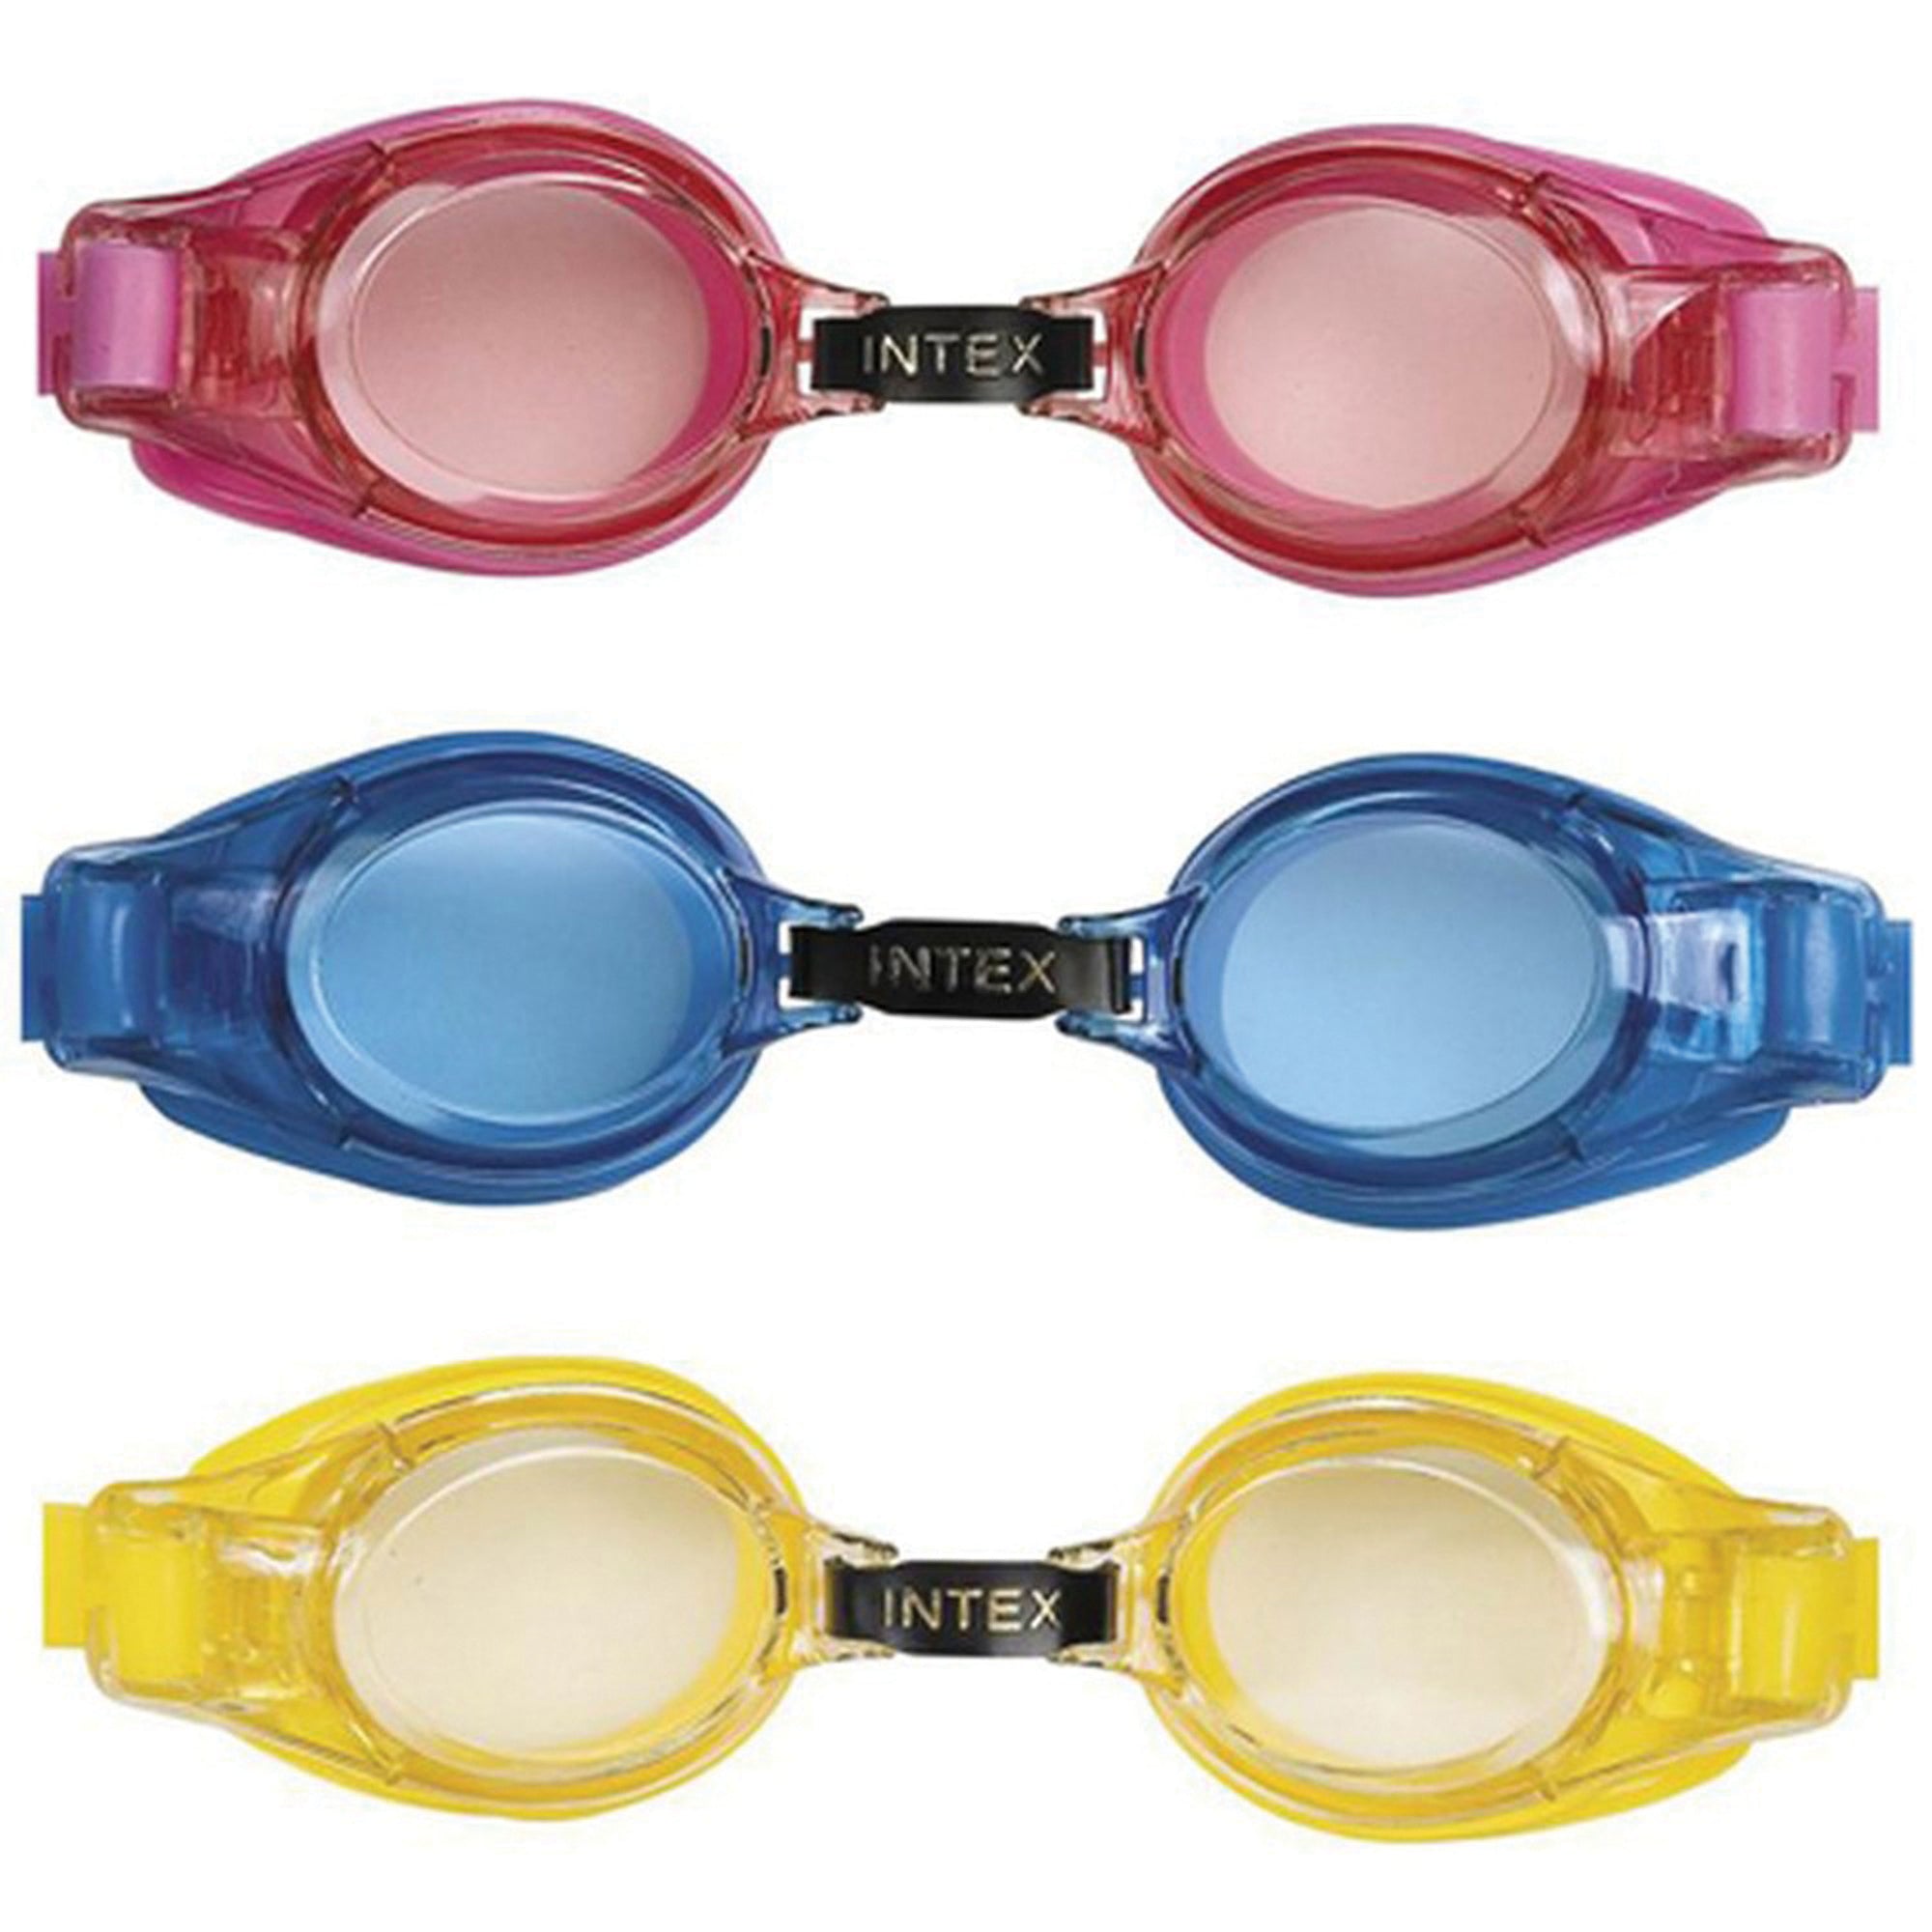 Intex 55601 Junior Goggles - Assorted Colors